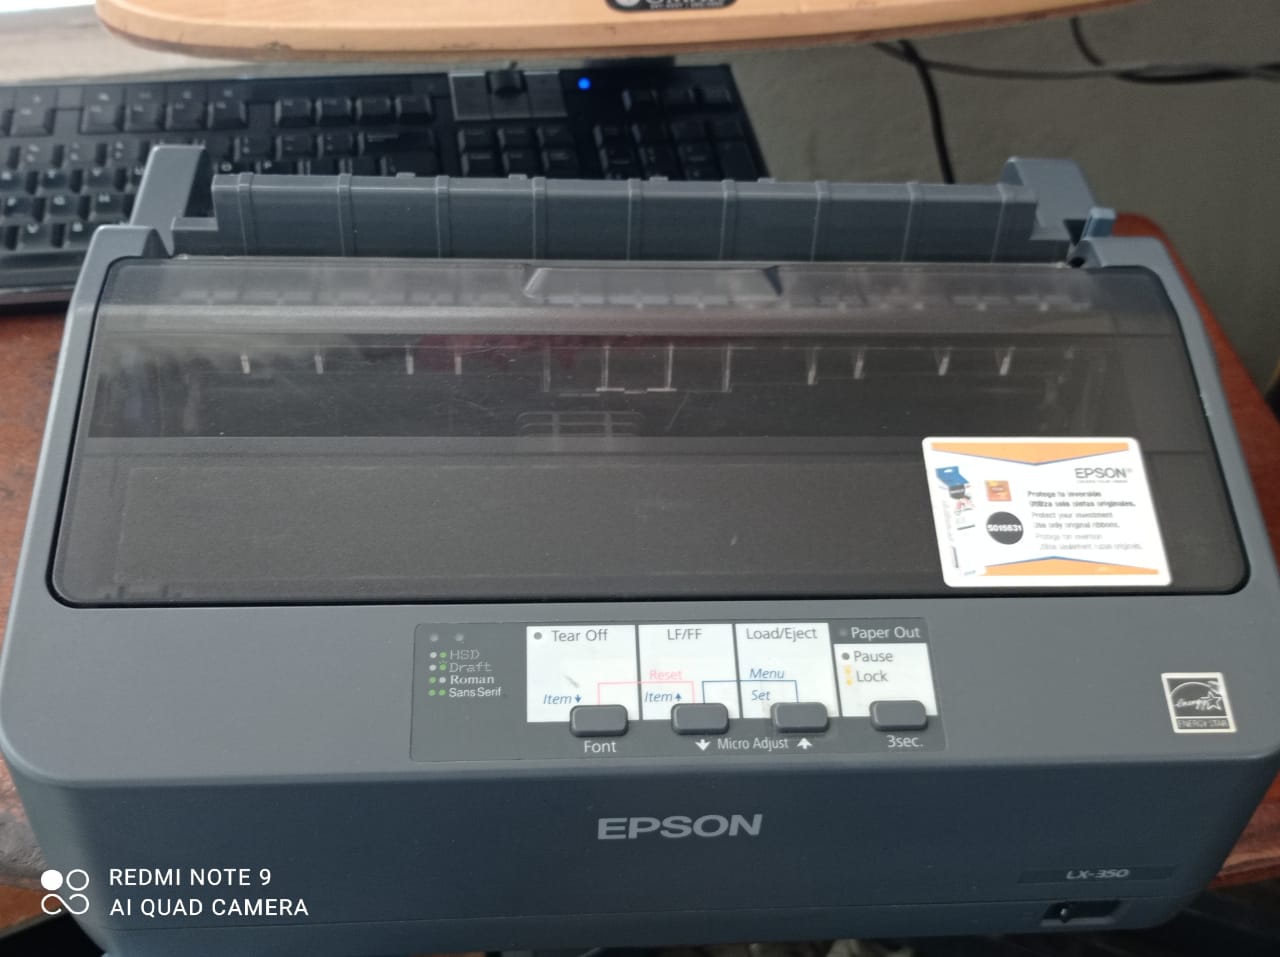 impresoras y scanners - Impresora matrixial epson LX-350